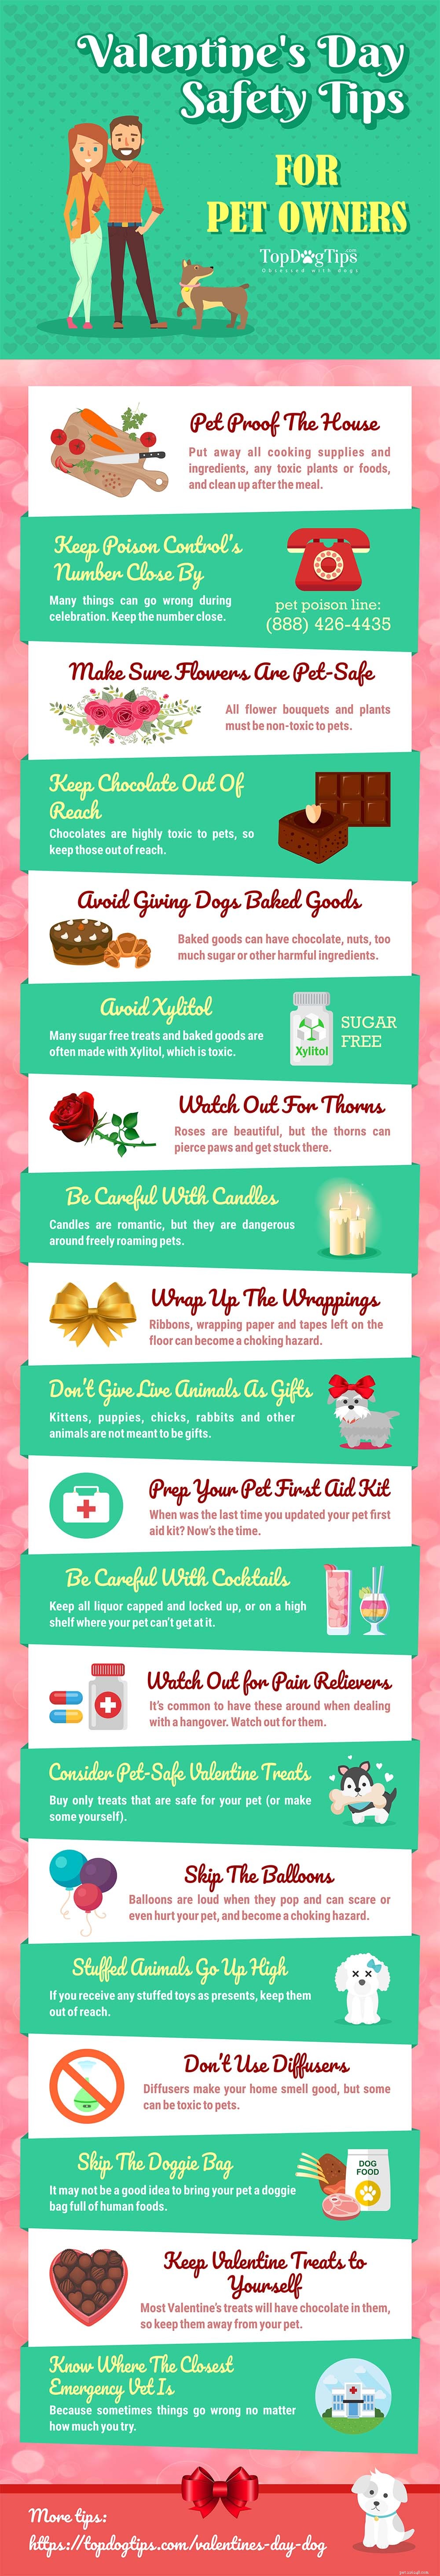 20 bezpečnostních tipů na Valentýna pro majitele domácích mazlíčků [Infographic]